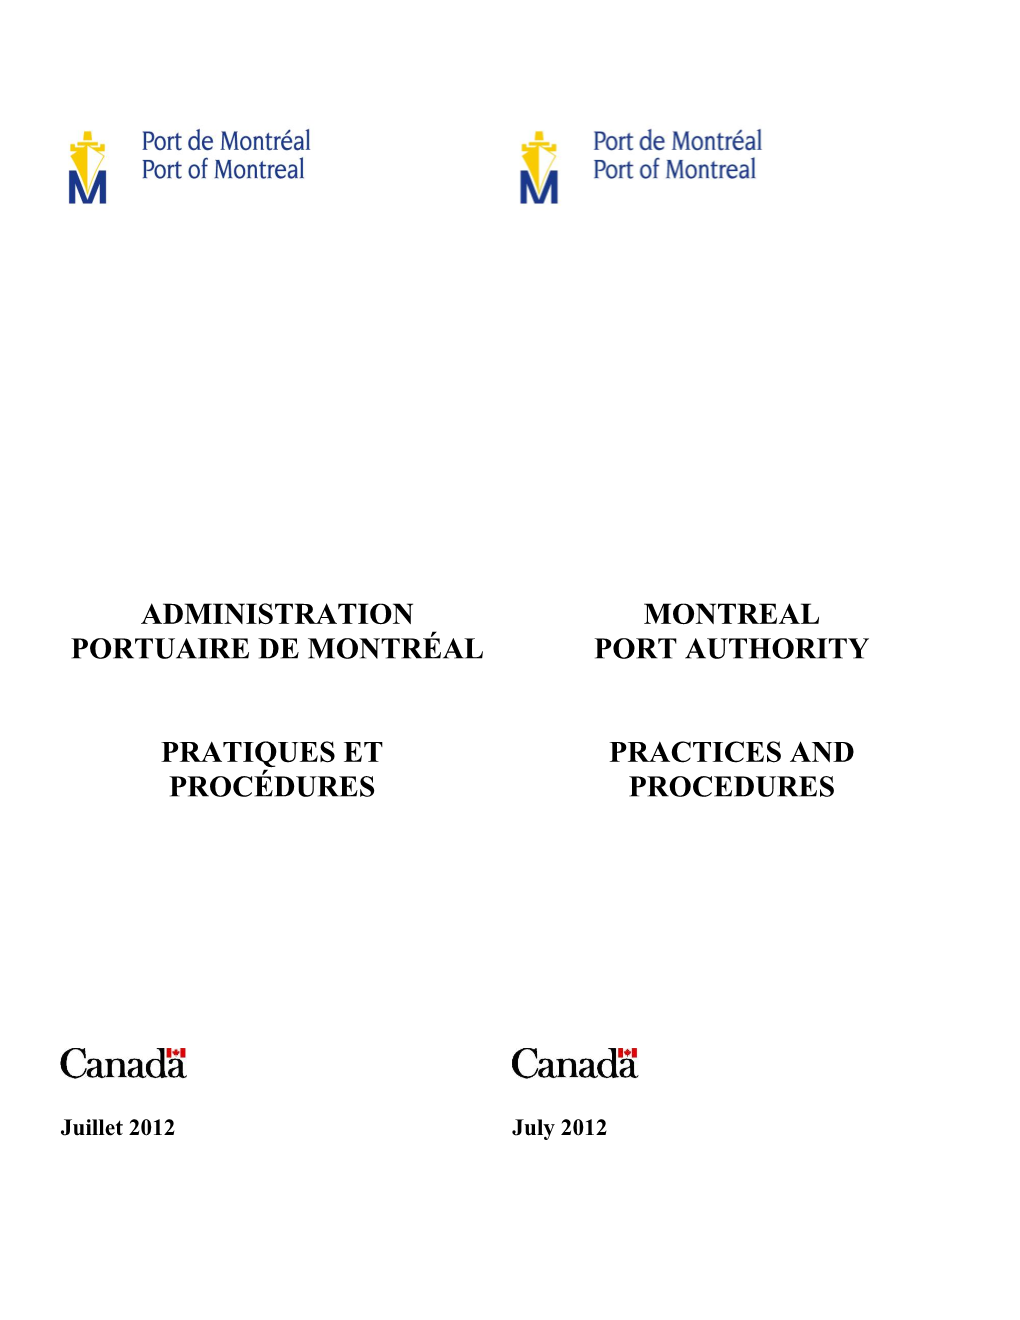 Administration Portuaire De Montréal Pratiques Et Procédures Montreal Port Authority Practices and Procedures